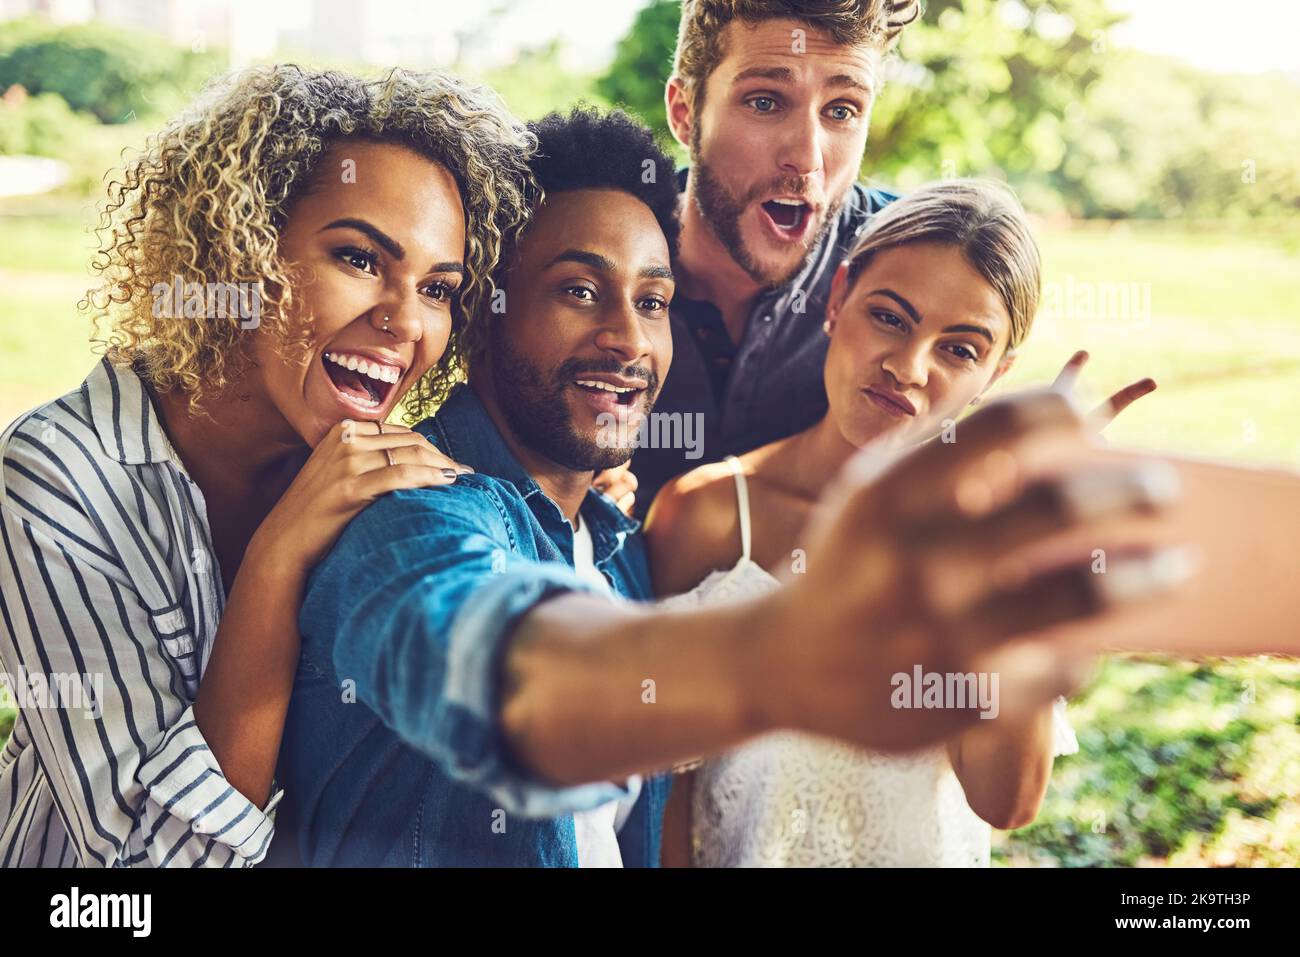 Dieses Bild wird alle Gleichen bekommen. Zwei glückliche junge Paare, die ein Selfie gemeinsam im Freien machen. Stockfoto